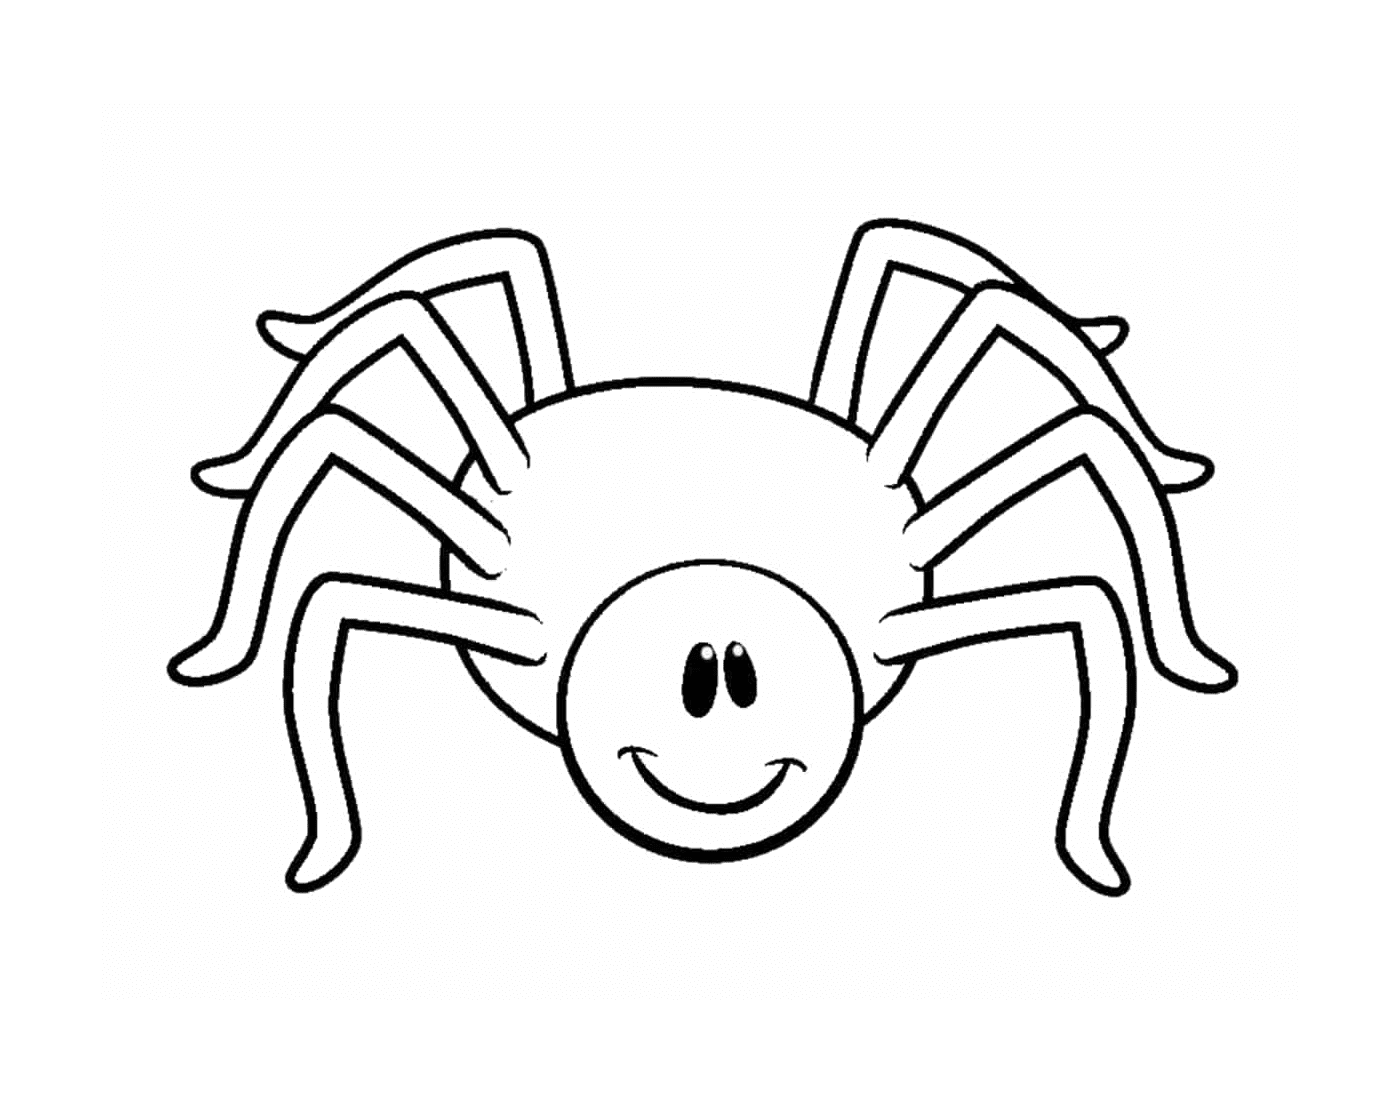  一个微笑的蜘蛛 